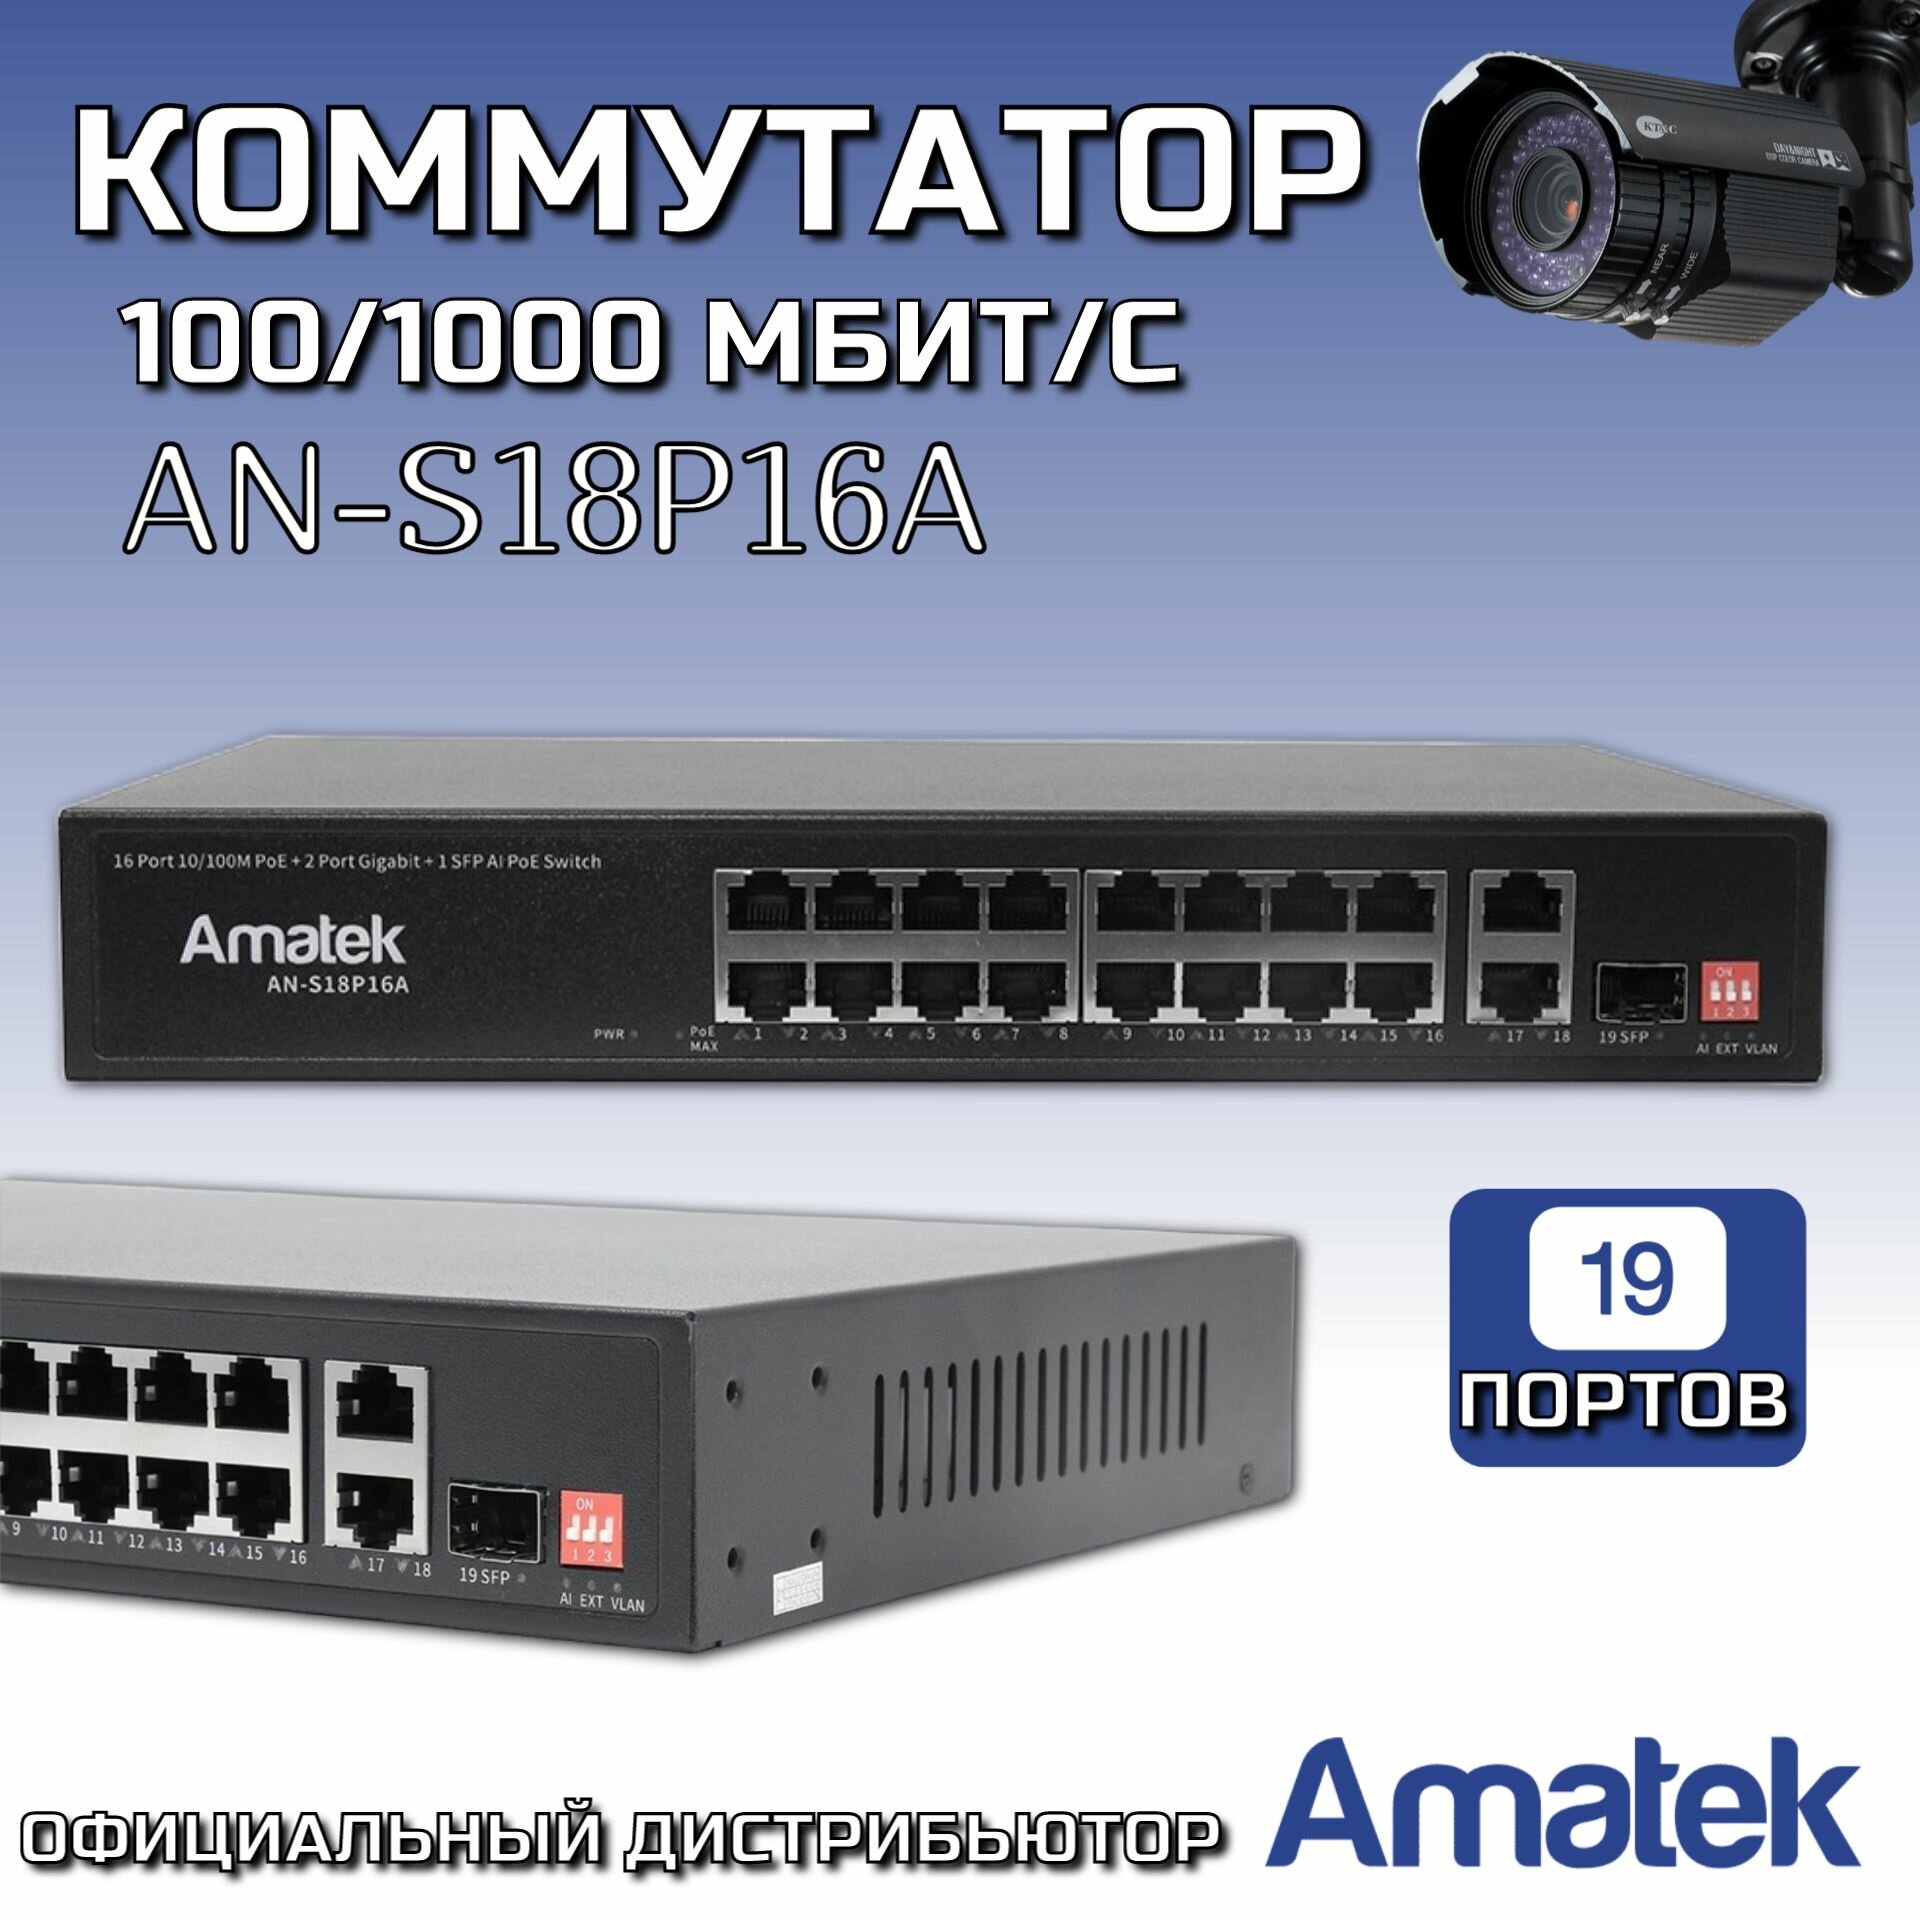 Коммутатор 19-портовый 100/1000 Мбит/с L2 коммутатор с PoE+ до 250Вт Amatek AN-S18P16A 7000794